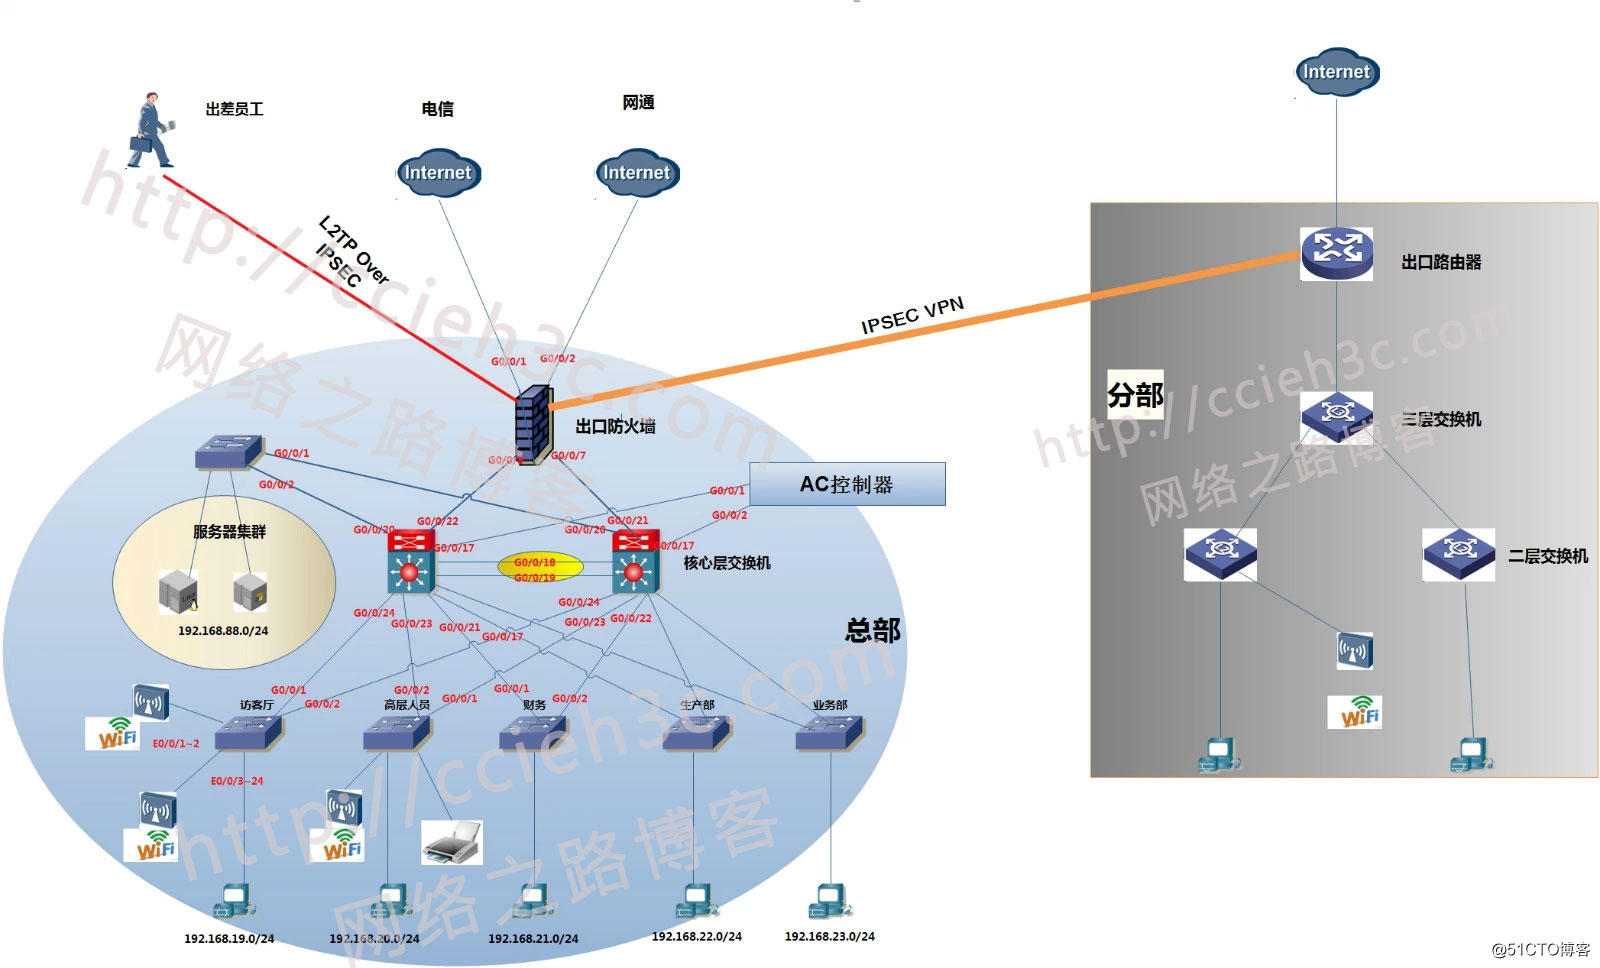 3、华为 华三中小型企业网络架构搭建 【接口划入对应的VLAN，包括个设备的接口类型定义】